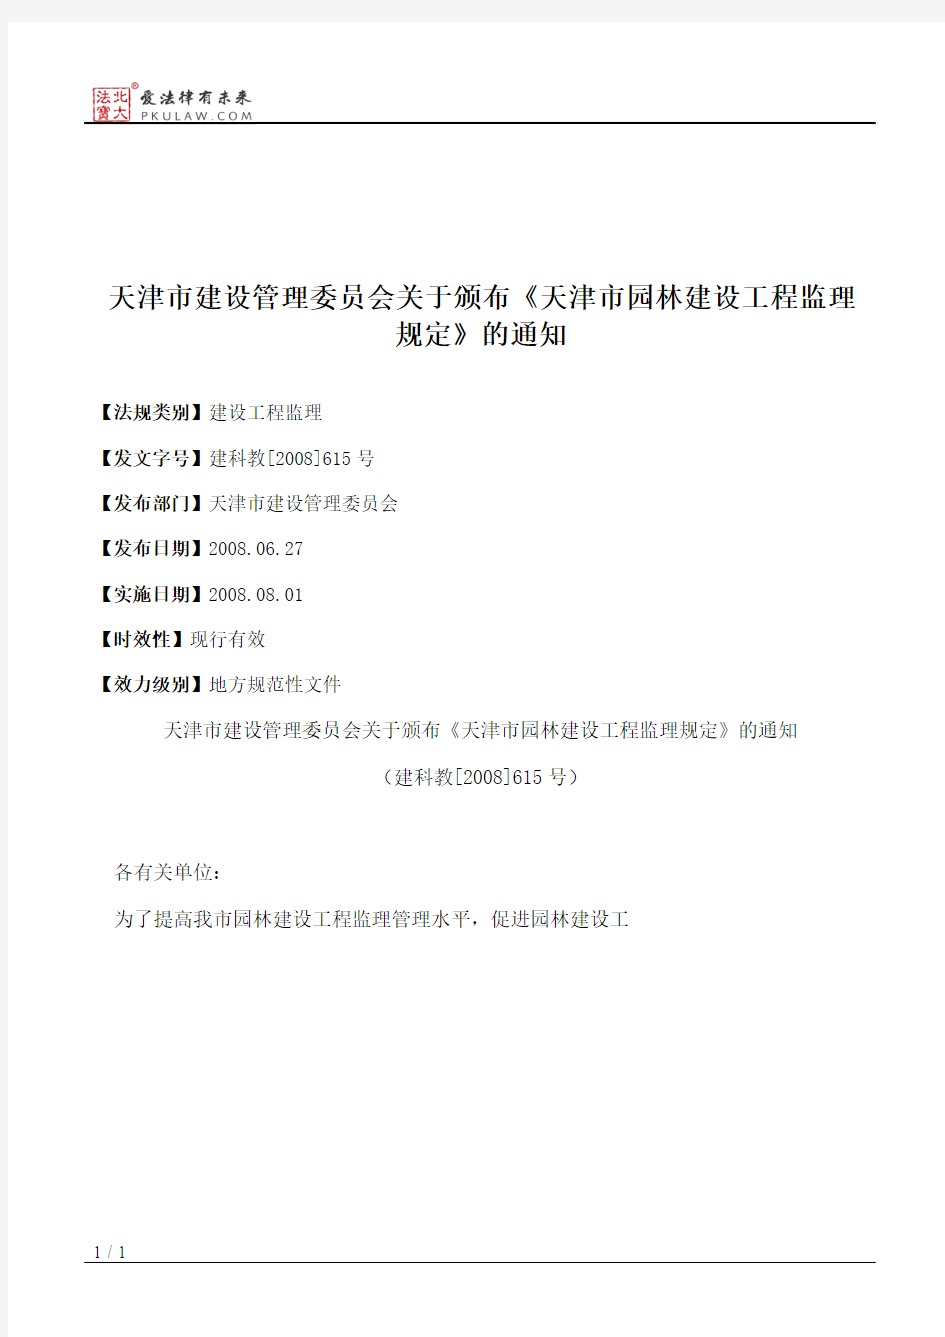 天津市建设管理委员会关于颁布《天津市园林建设工程监理规定》的通知